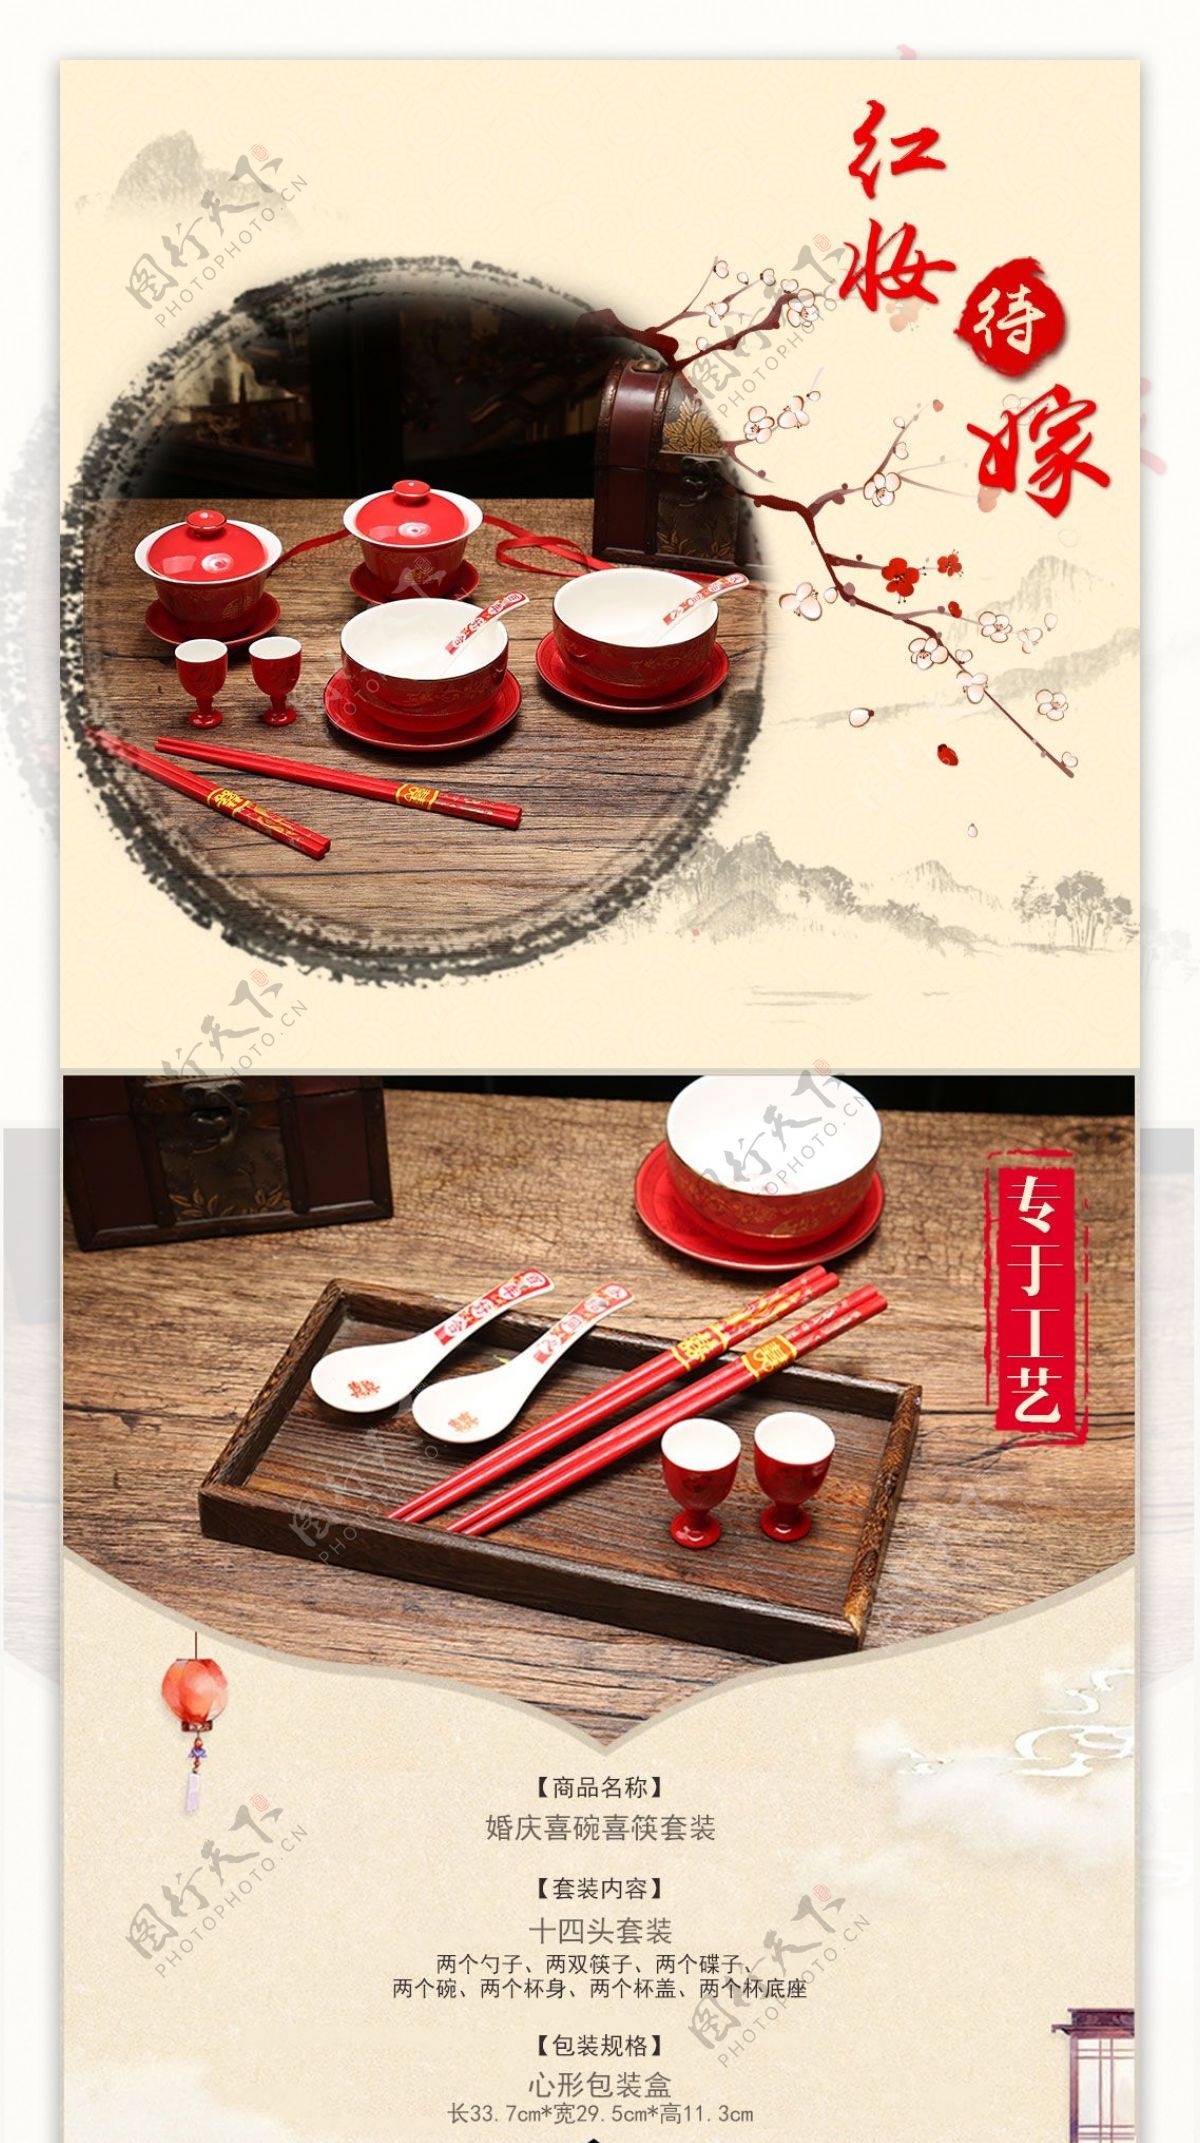 中国风碗筷婚庆用品详情页模版